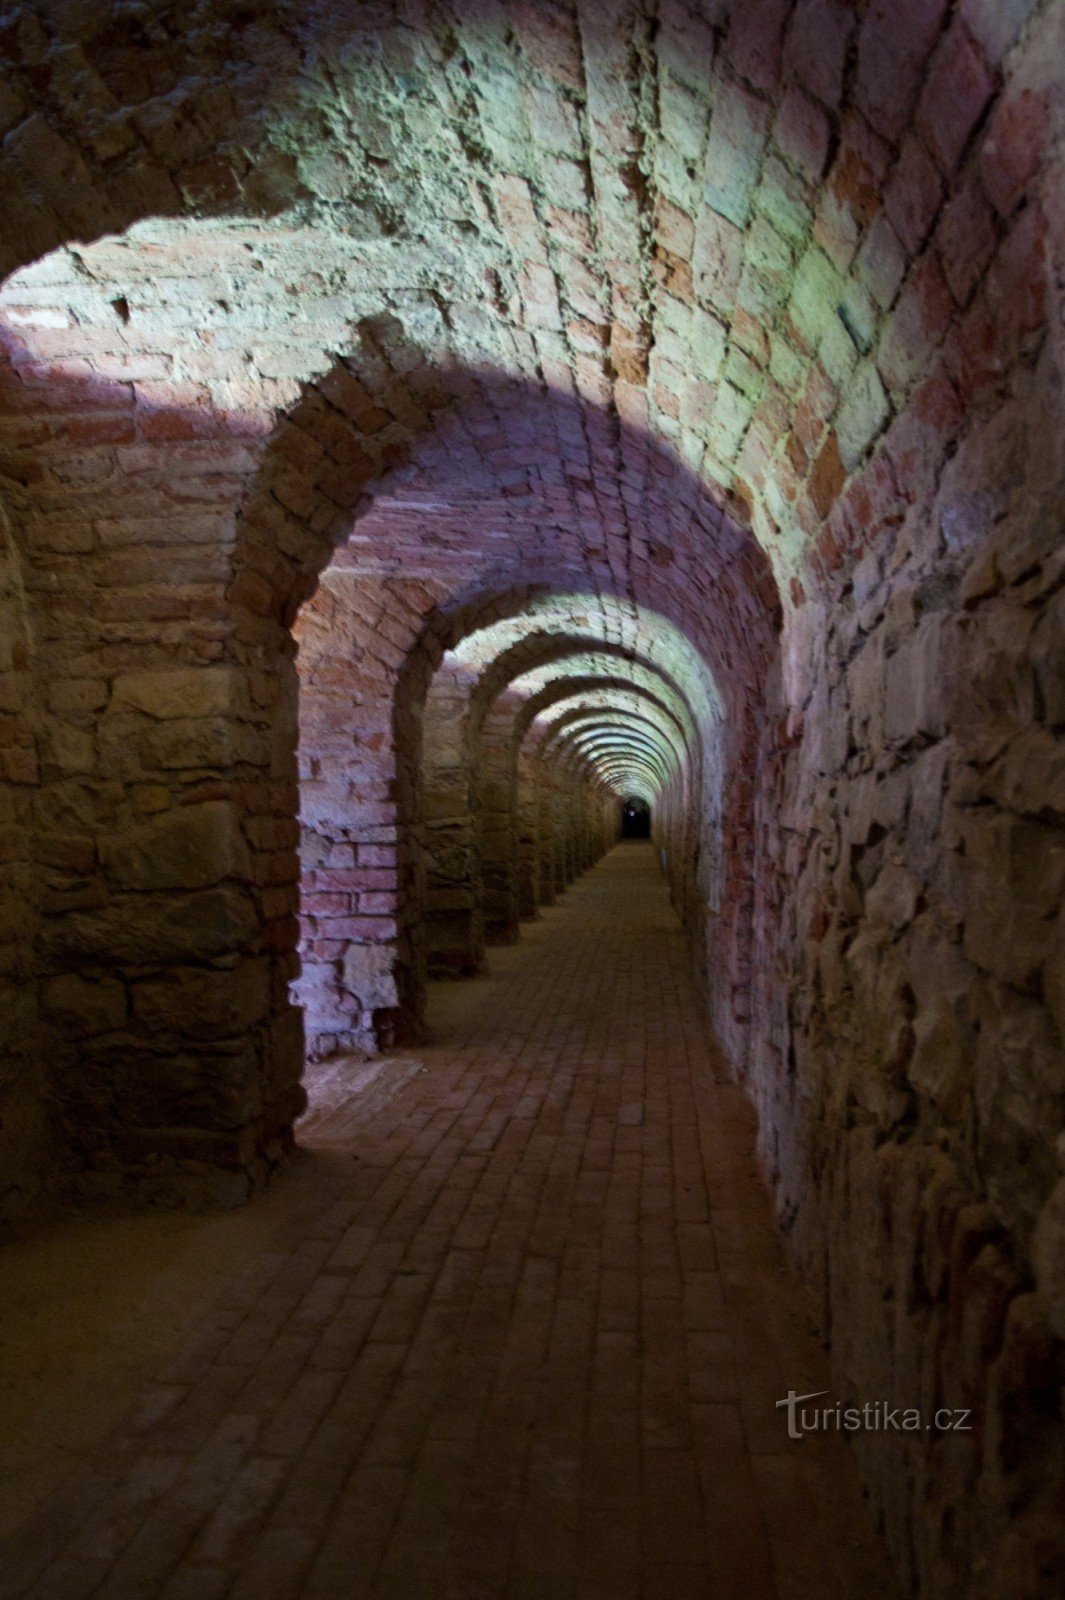 Fortezza di Terezín - passaggi sotterranei